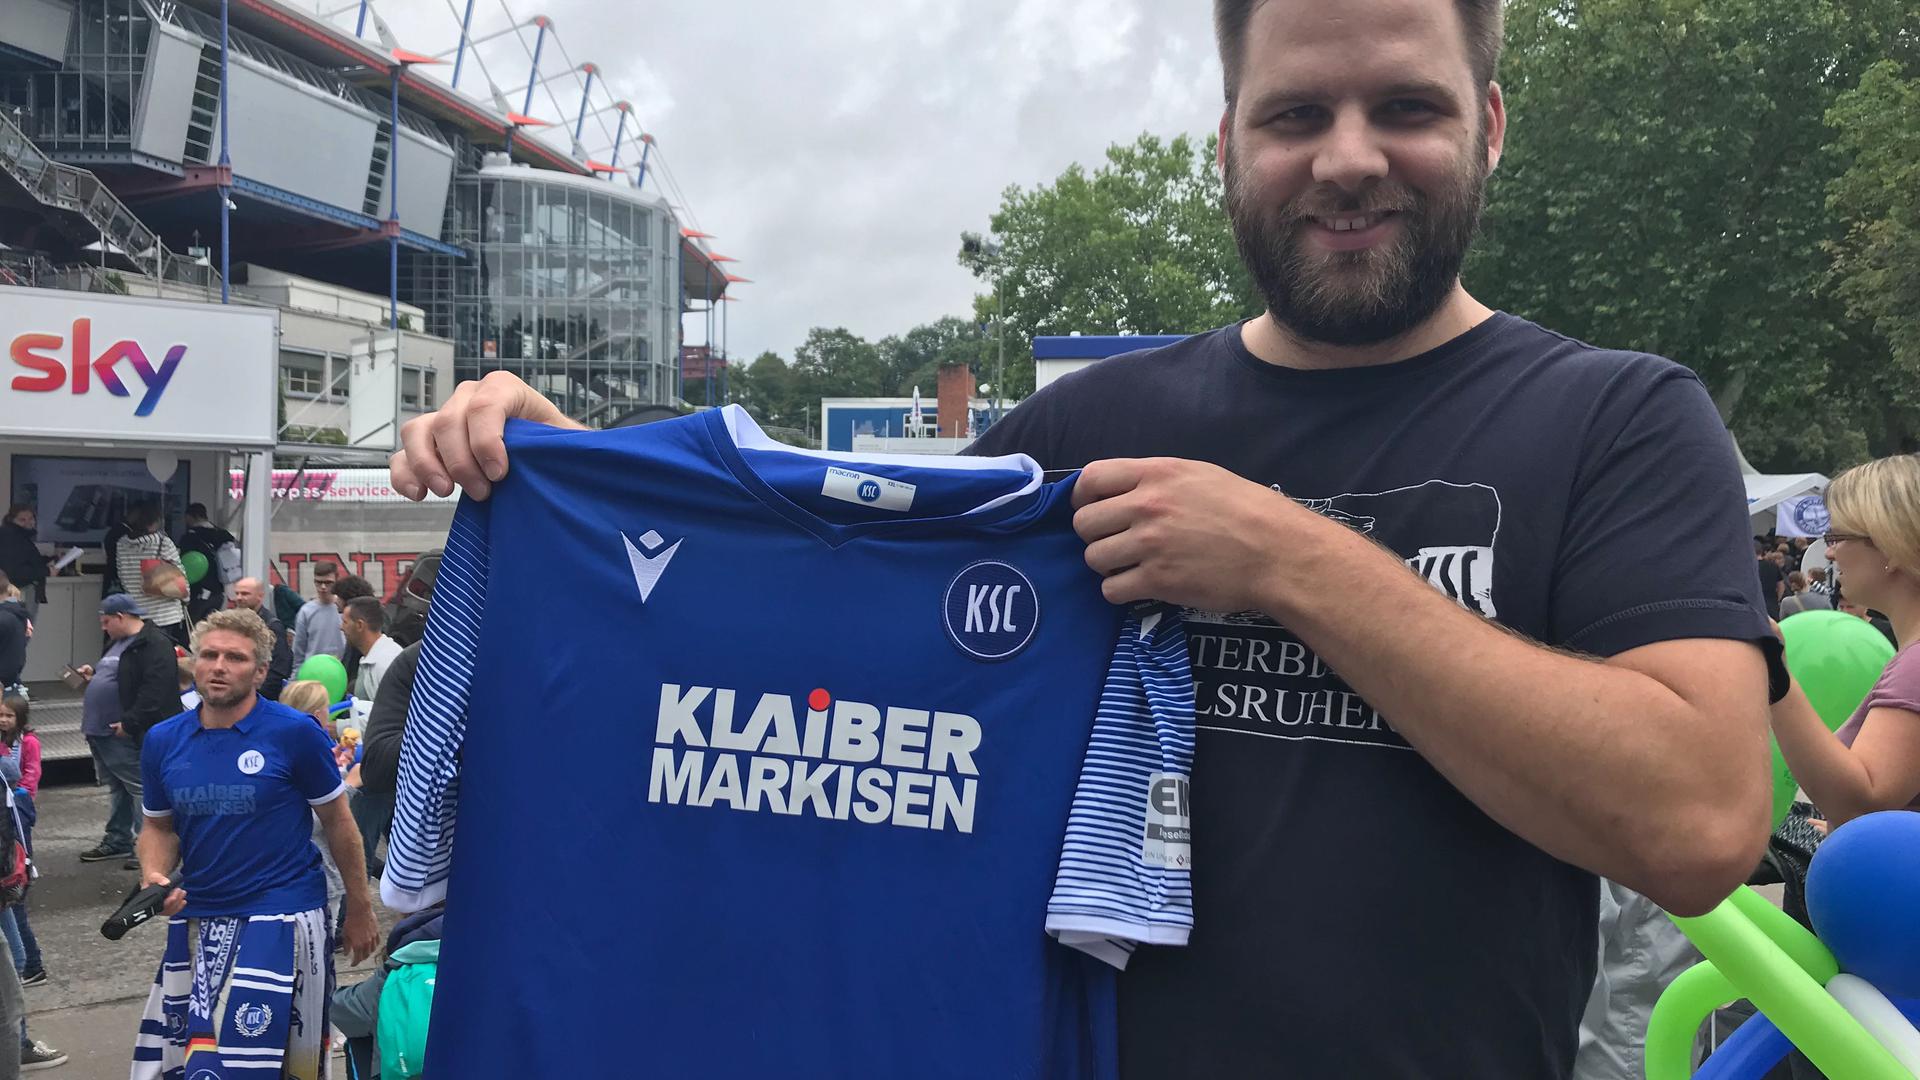 Patrick Bittigkoffer aus Neulingen hat sich als einer der ersten ein neues Trikot des Karlsruher SC gesichert. Ihm gefallen die Shirts. Er findet sie "höchstens ein bisschen eng".